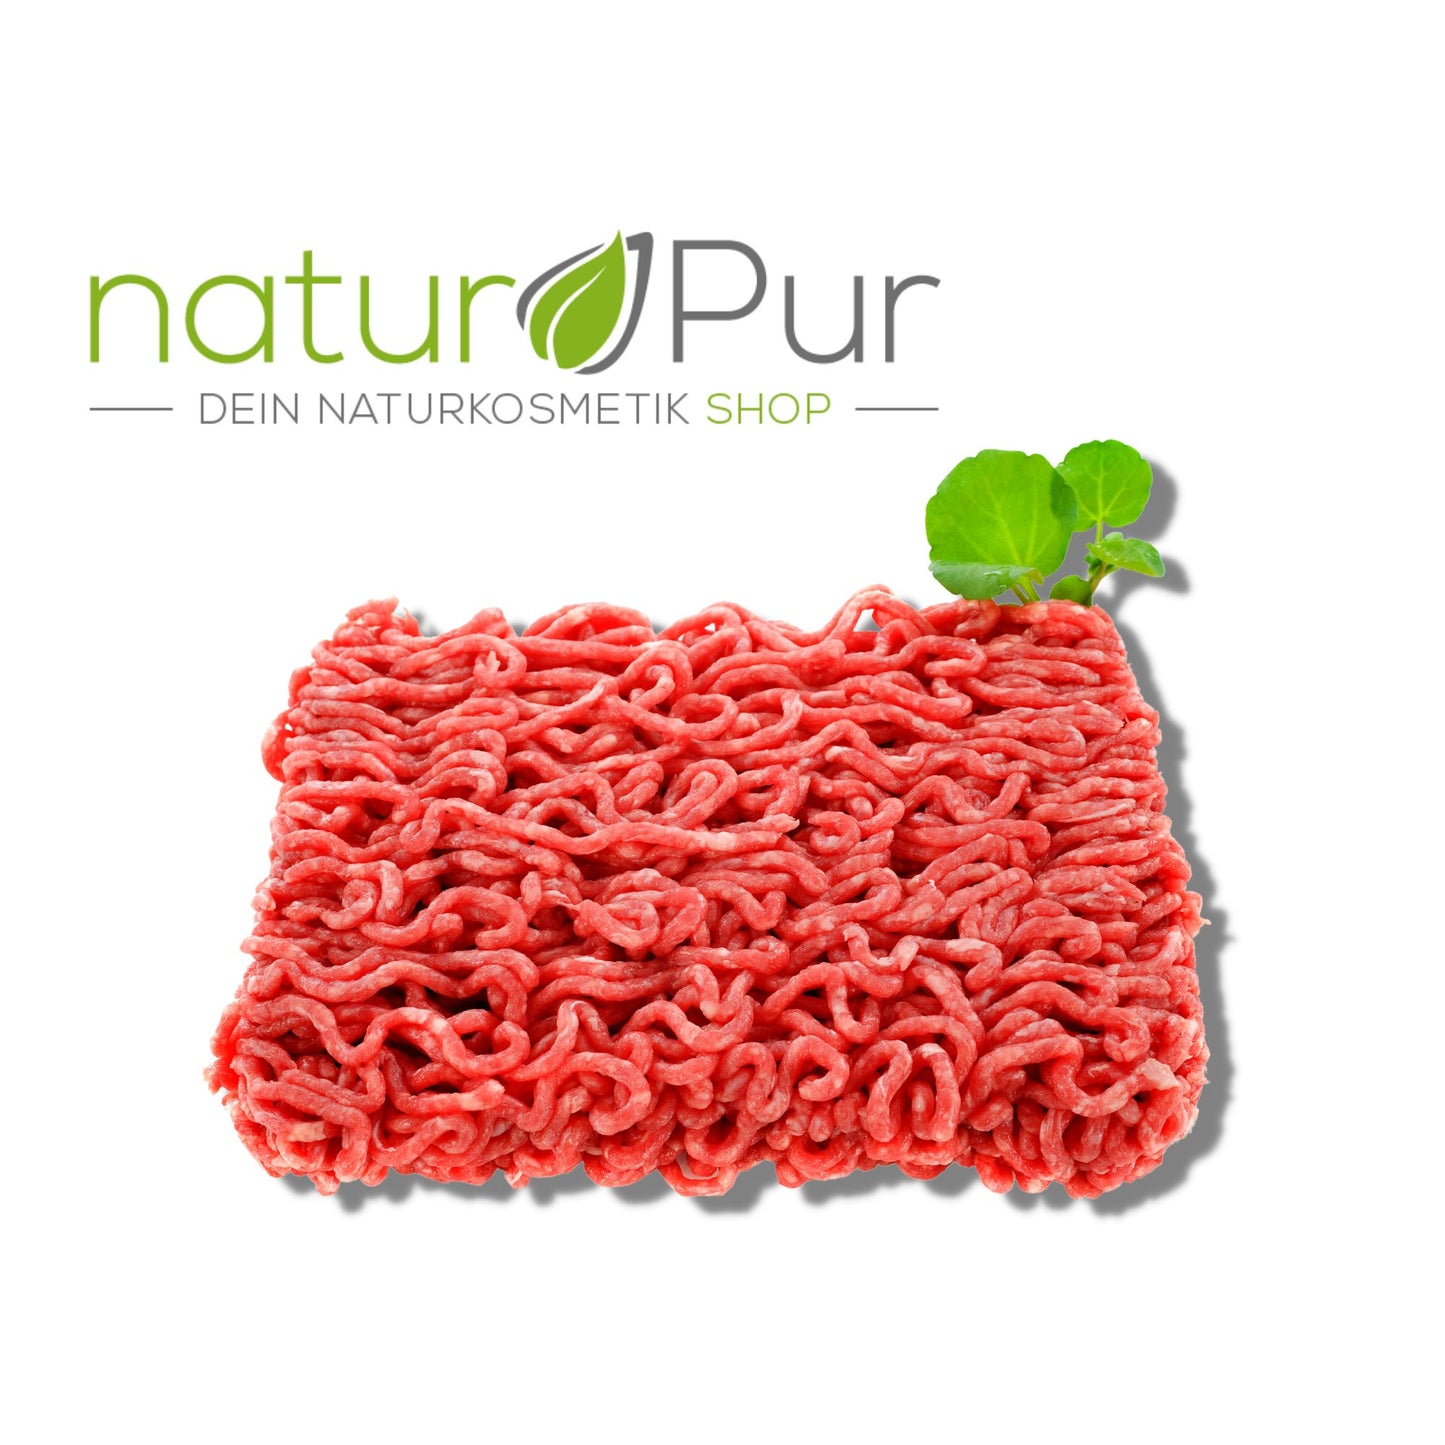 Natur Pur Bio Rinderhackfleisch ca 250 g